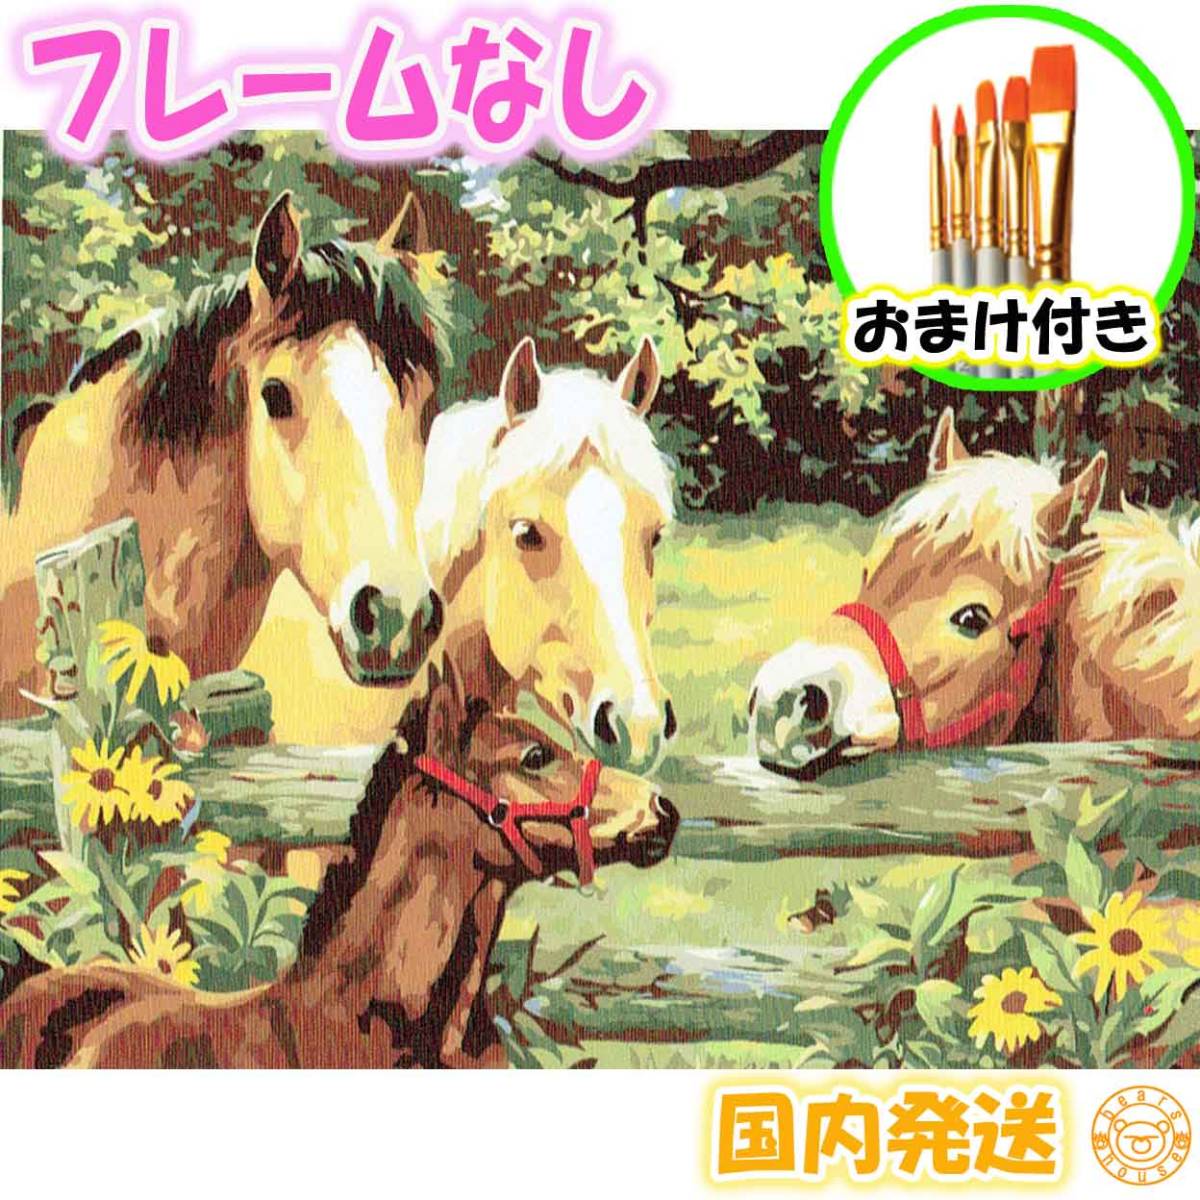 ☆Bonus enthalten☆ [Rahmenlos] Zahlen-Malbuch-Set für Erwachsene, mit Farben, süßes Pferd, Ranch, Innere, Malerei, Puzzle, Ölgemälde Stil 6586, Kunstwerk, Malerei, Andere